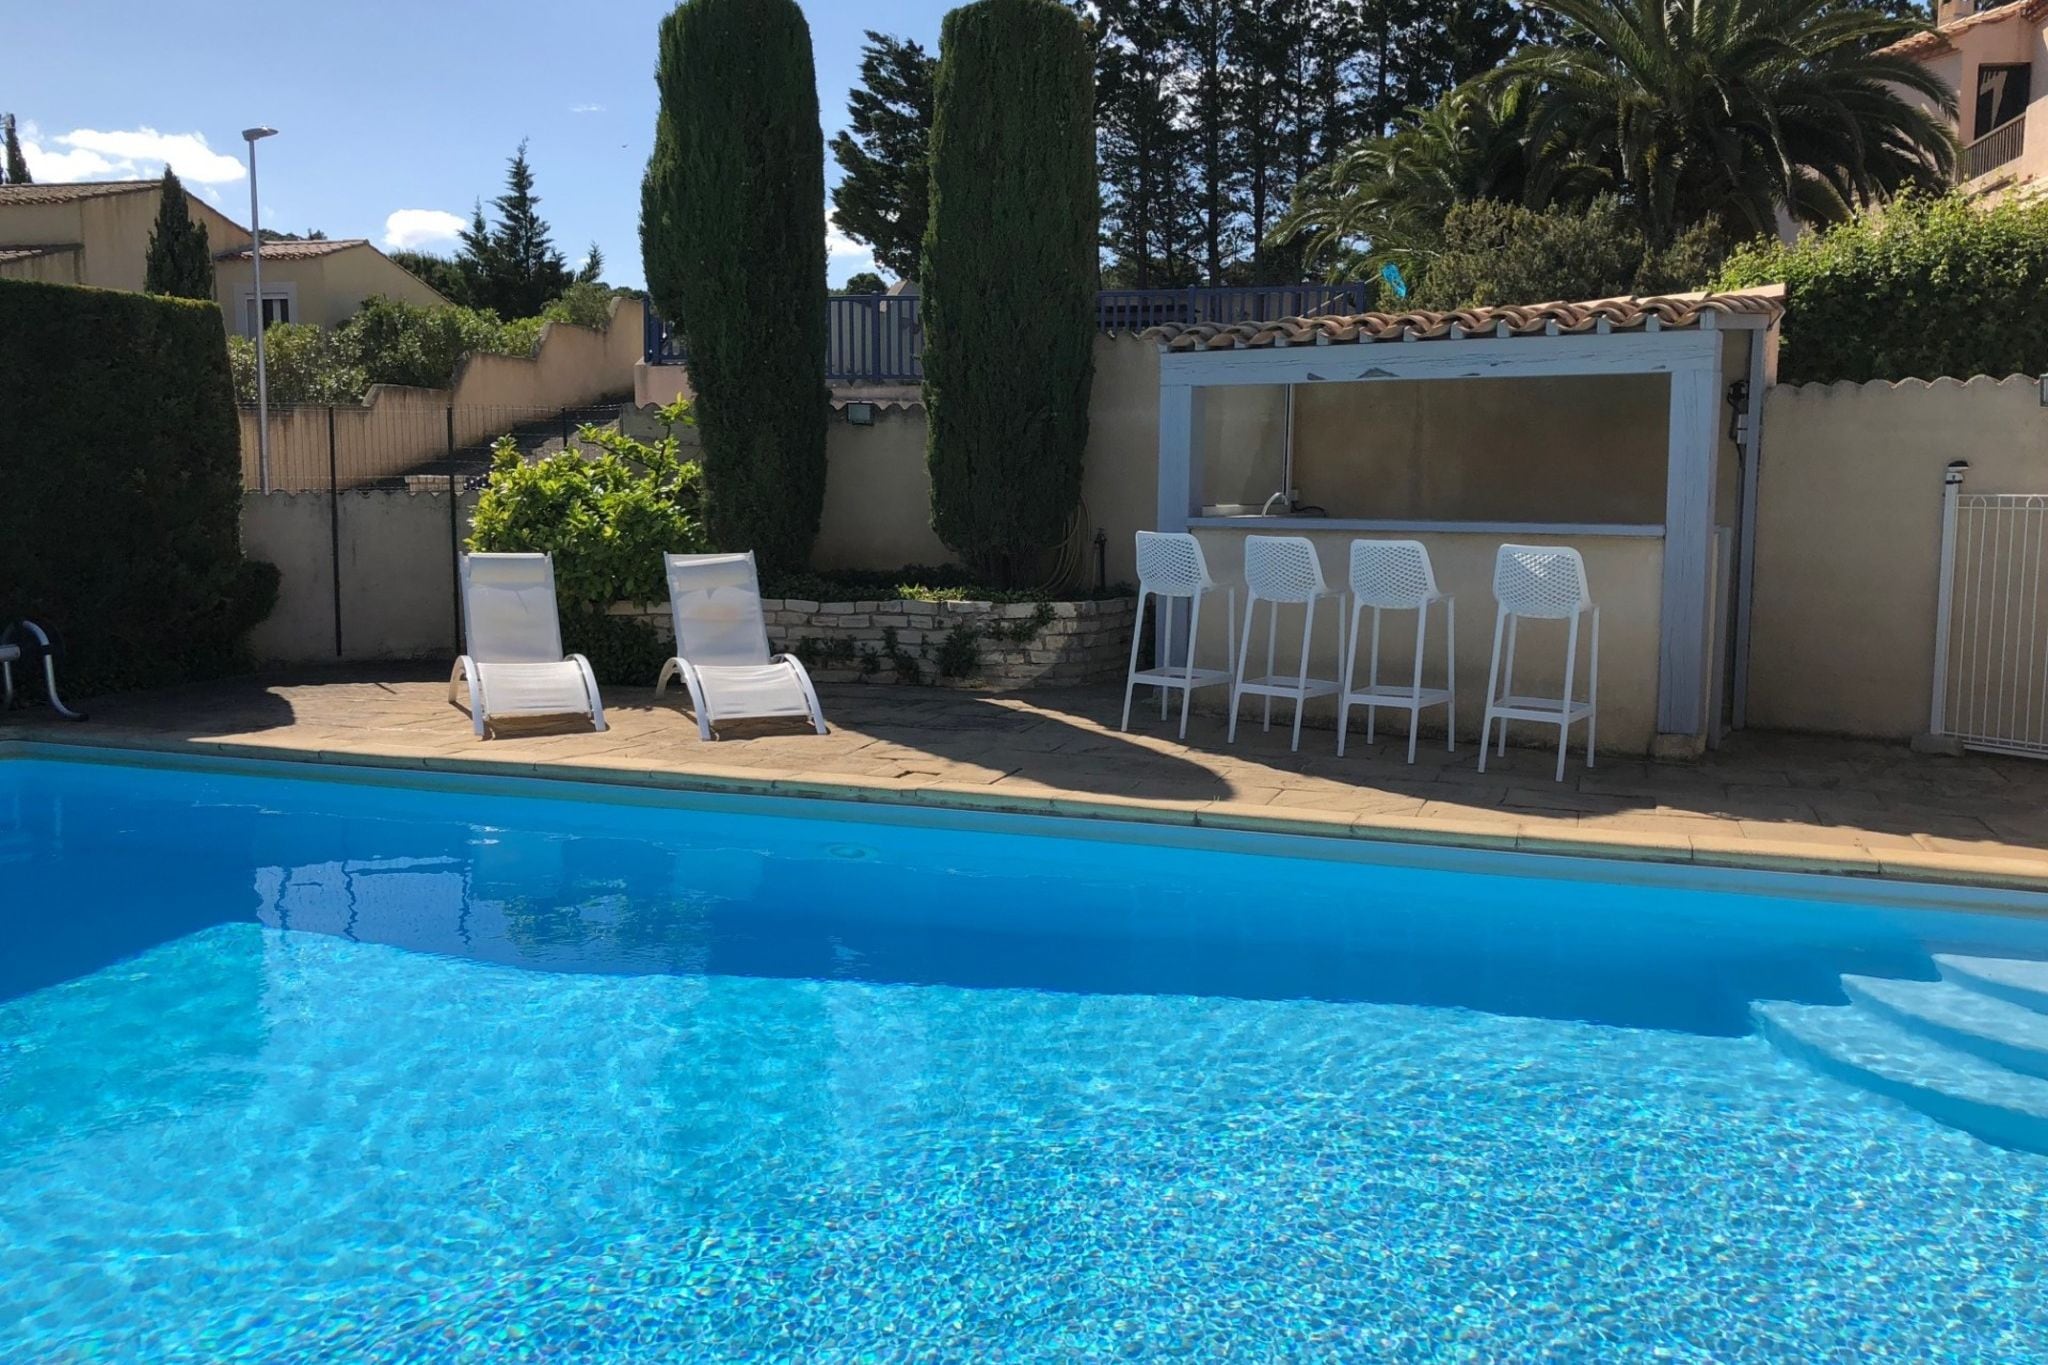 Vakantievilla dichtbij Narbonne-Plage, omheind privézwembad en uitzicht op een meer